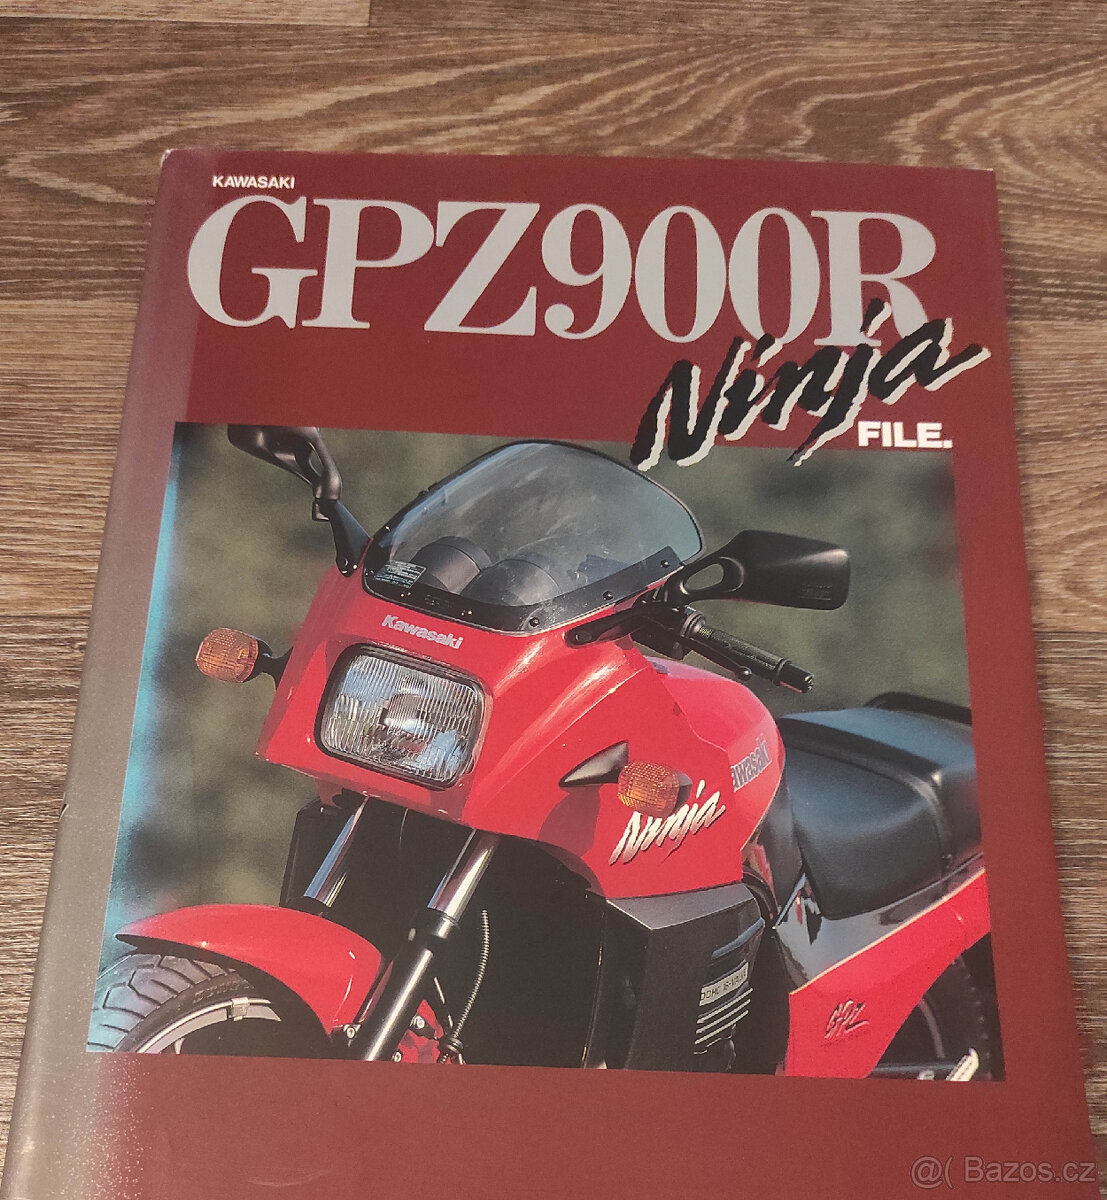 Kawasaki GPZ900R speciální vydání japonského časopisu